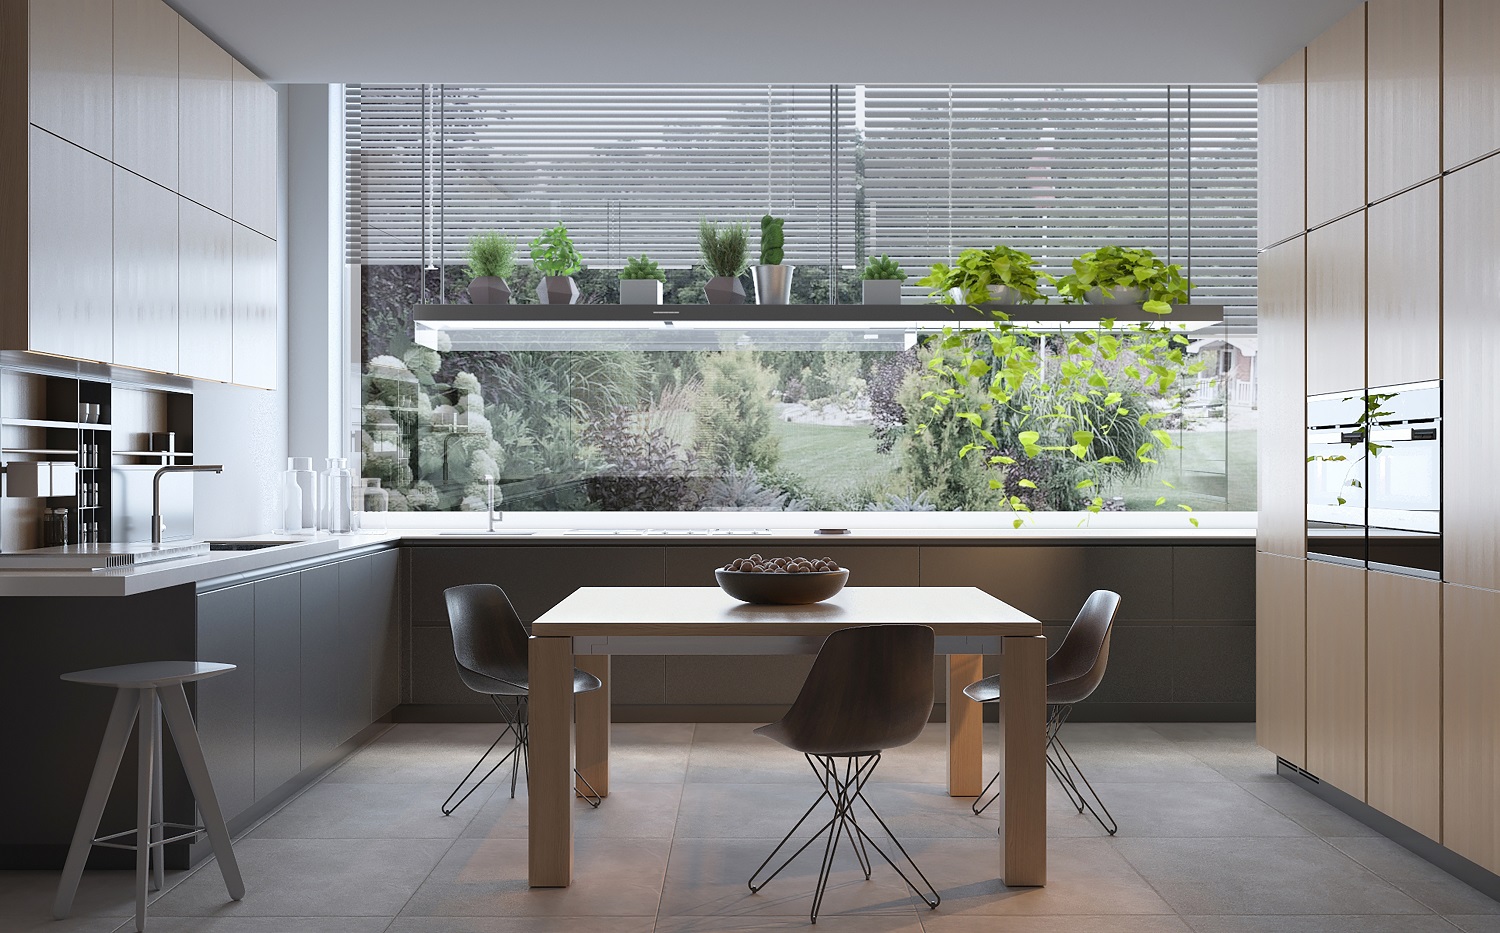 décor de cuisine moderne espace repas au centre de la pièce bois élégant moderne